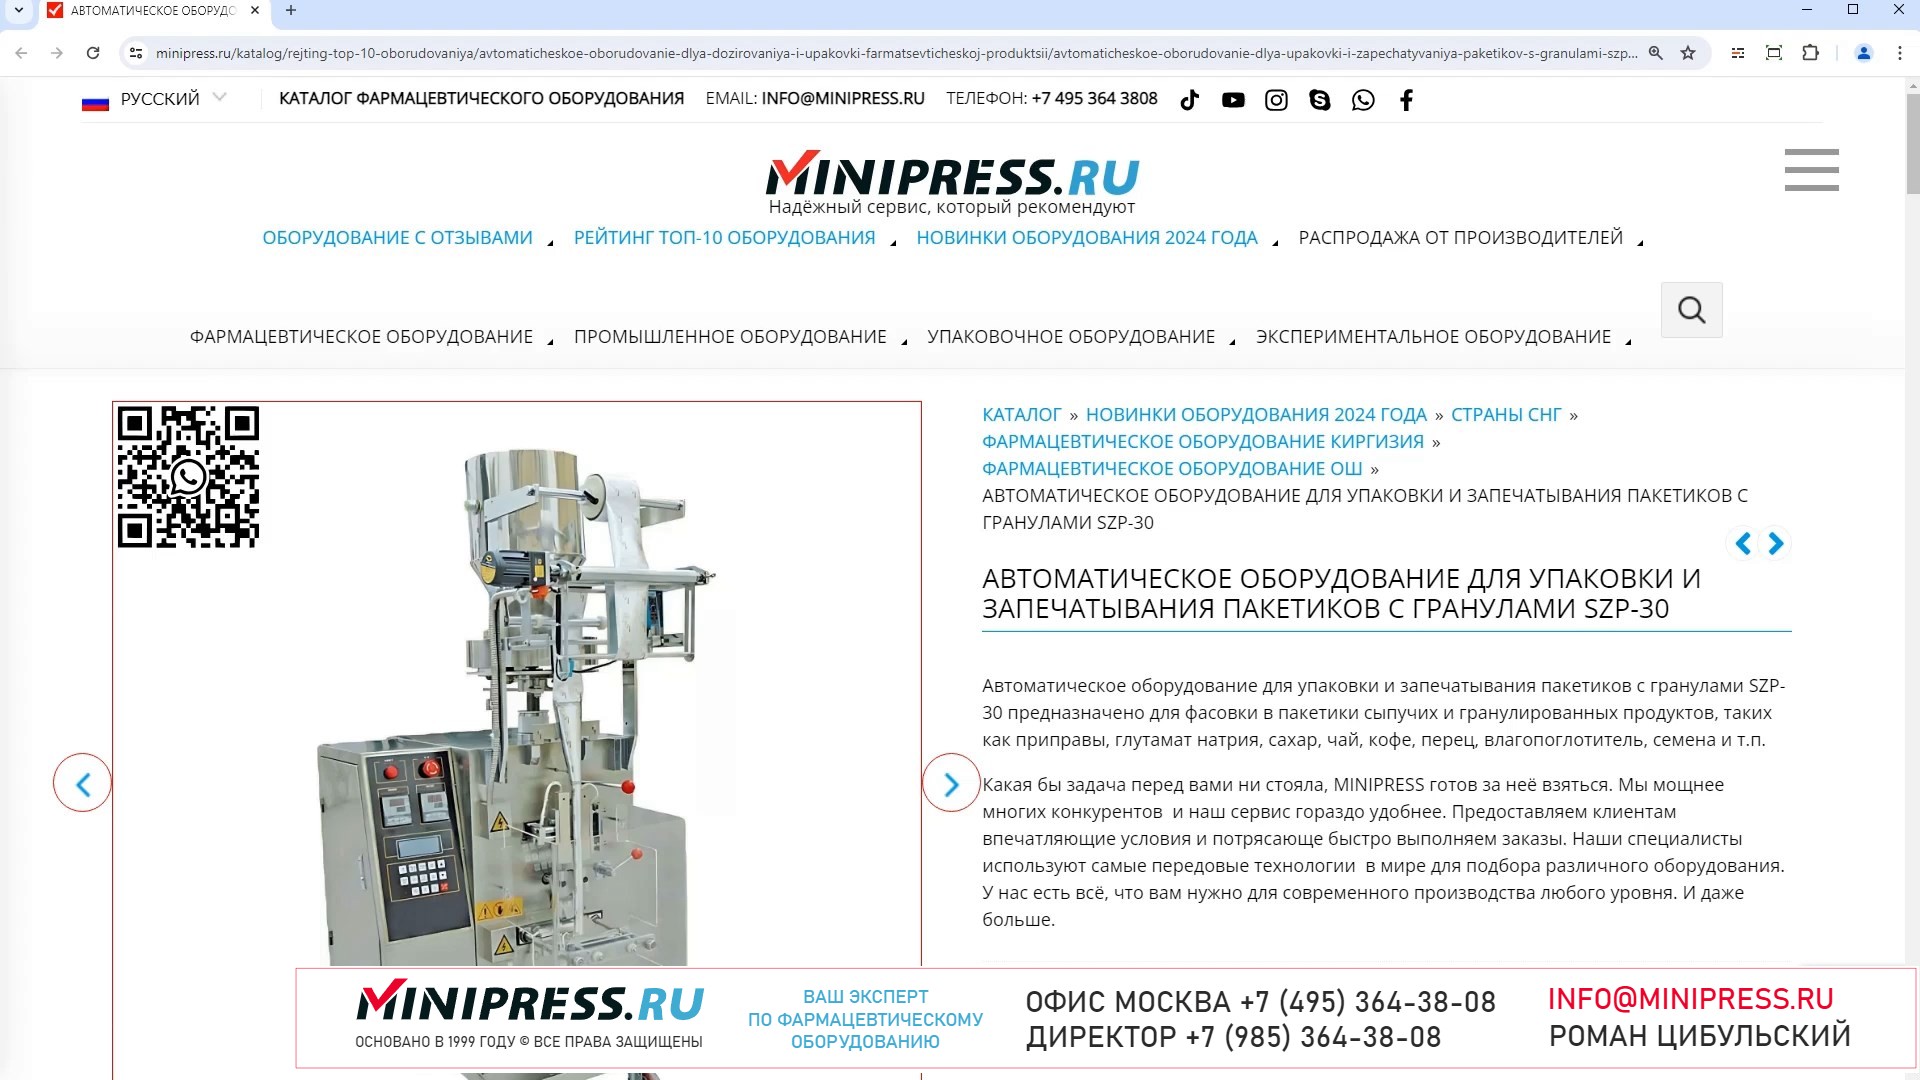 Minipress.ru Автоматическое оборудование для упаковки и запечатывания пакетиков с гранулами SZP-30